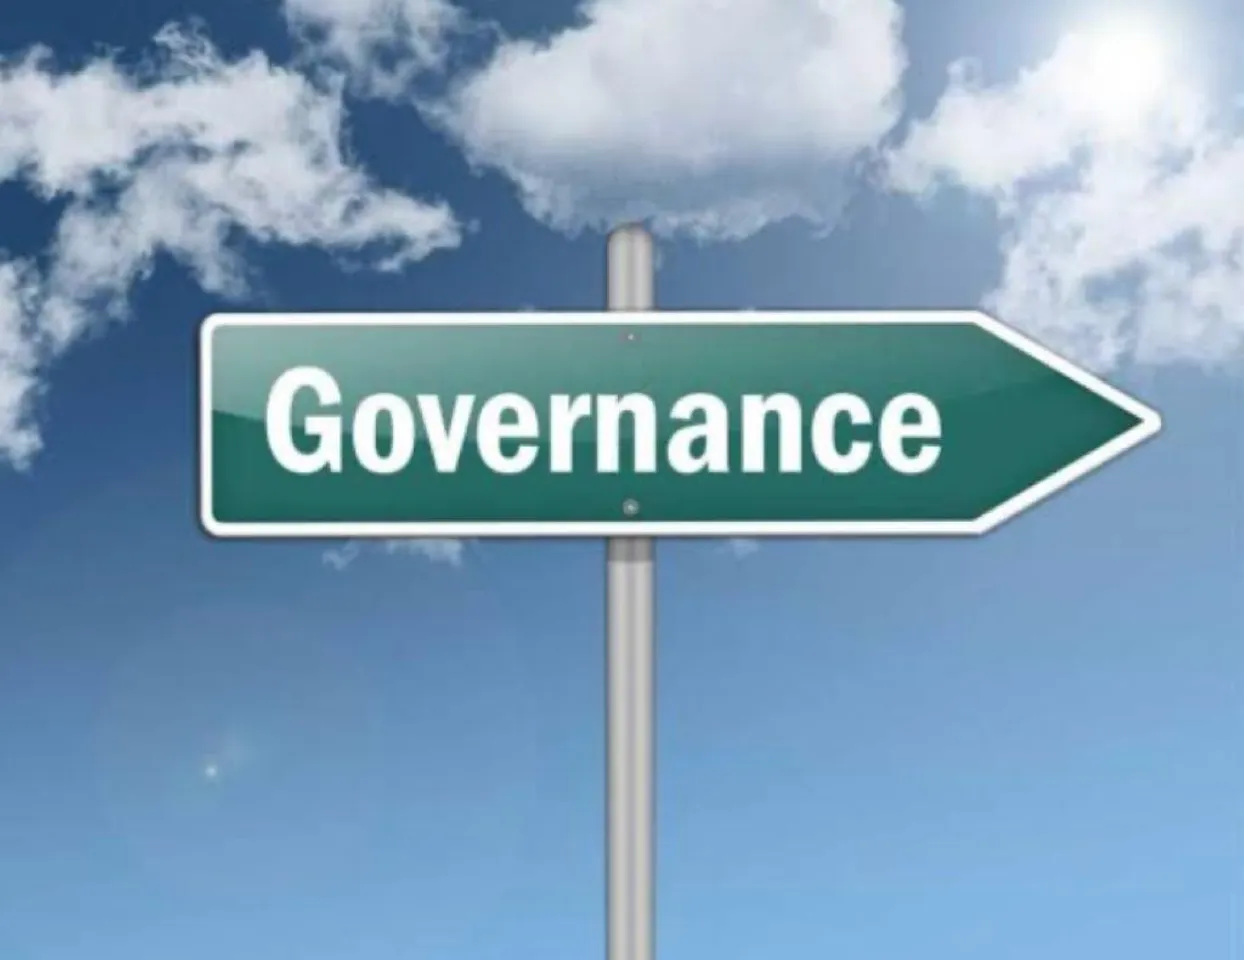 Governance & Bureaucracy